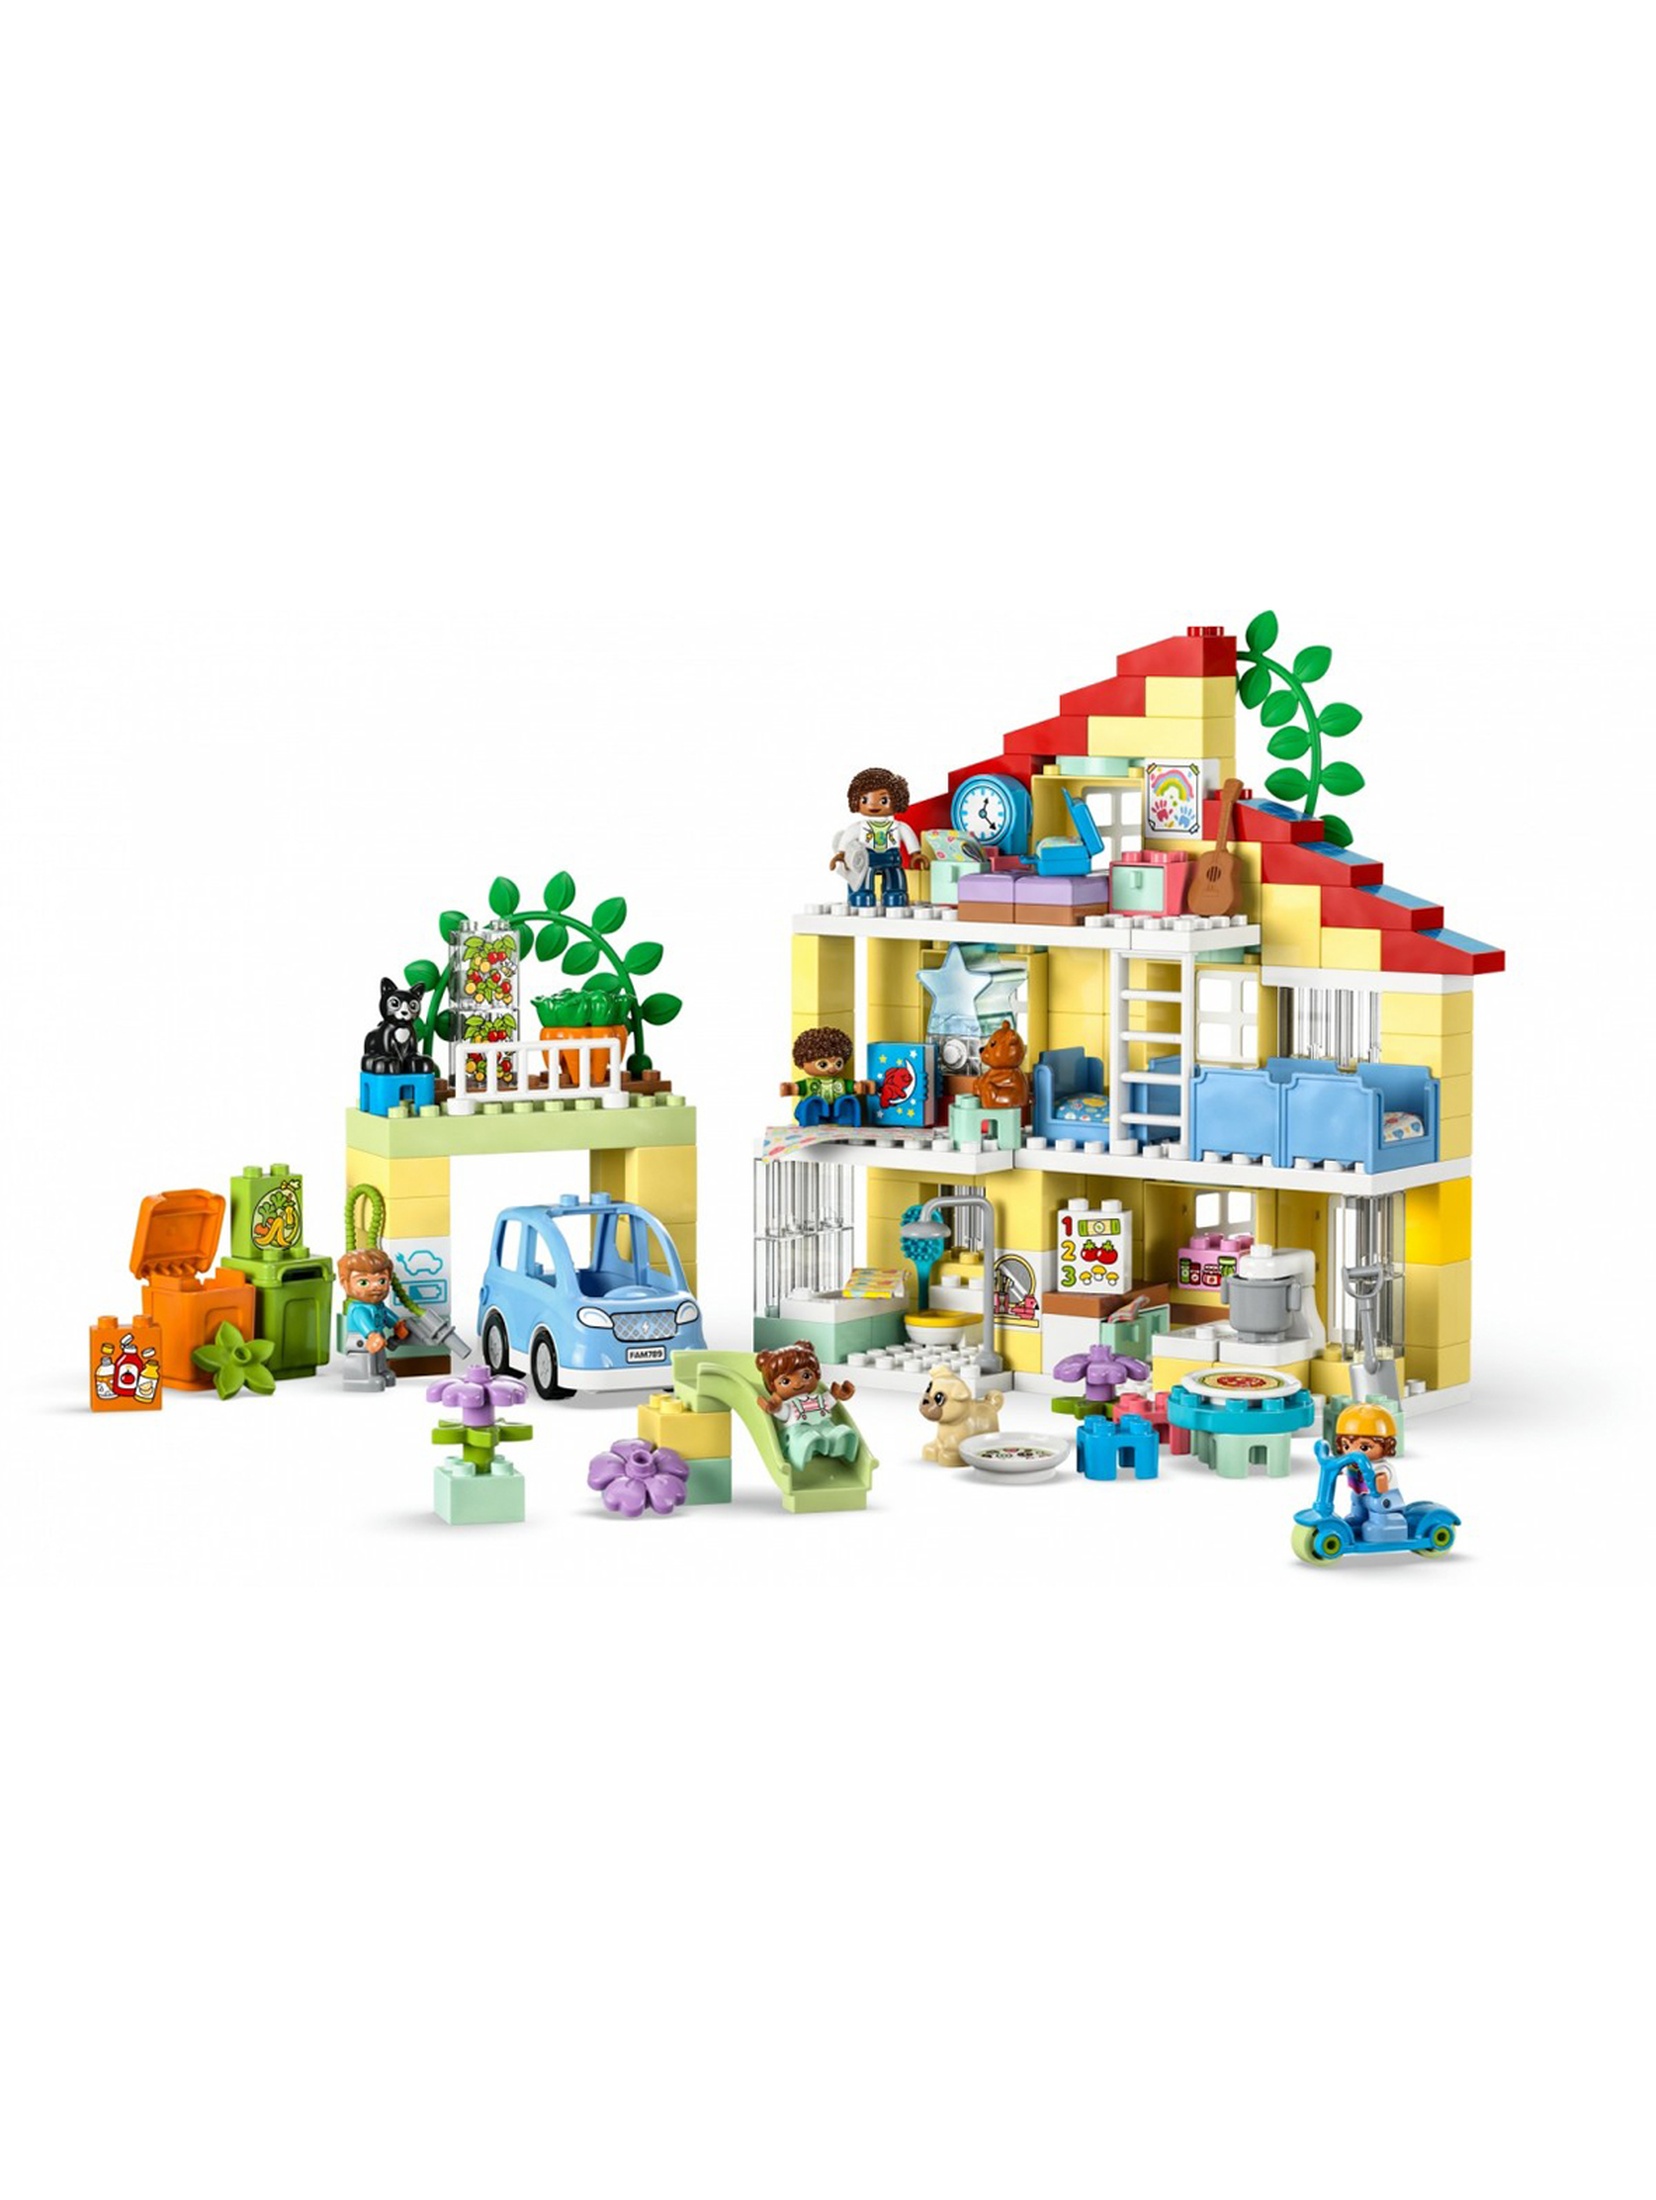 Klocki LEGO DUPLO 10994 Dom rodzinny 3w1 - 218 elementów, wiek 3 +